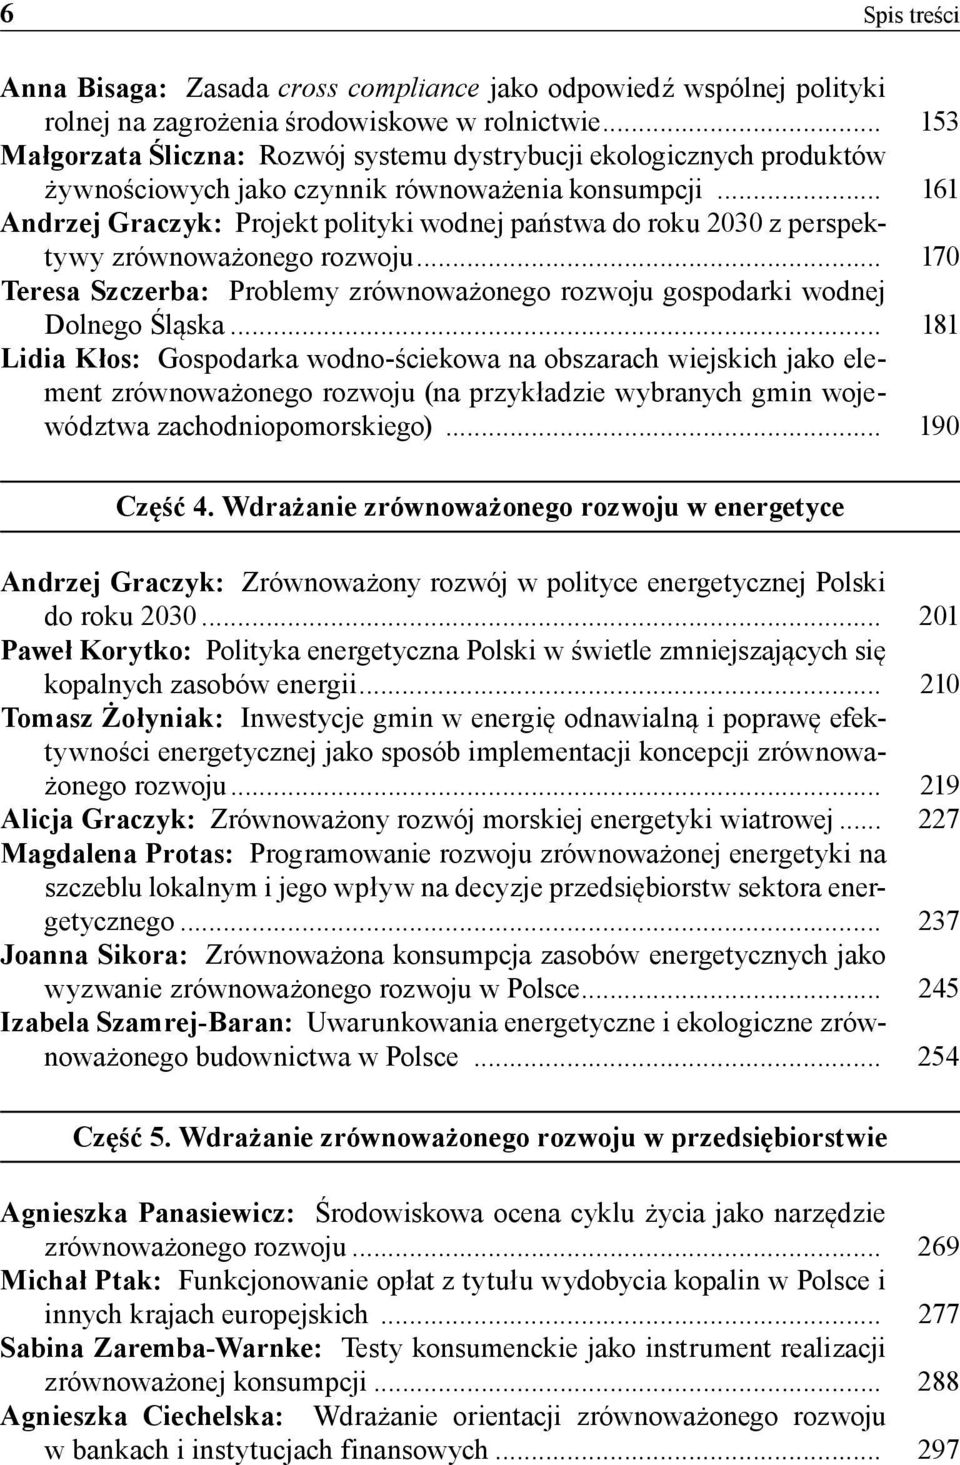 .. 161 Andrzej Graczyk: Projekt polityki wodnej państwa do roku 2030 z perspektywy zrównoważonego rozwoju... 170 Teresa Szczerba: Problemy zrównoważonego rozwoju gospodarki wodnej Dolnego Śląska.